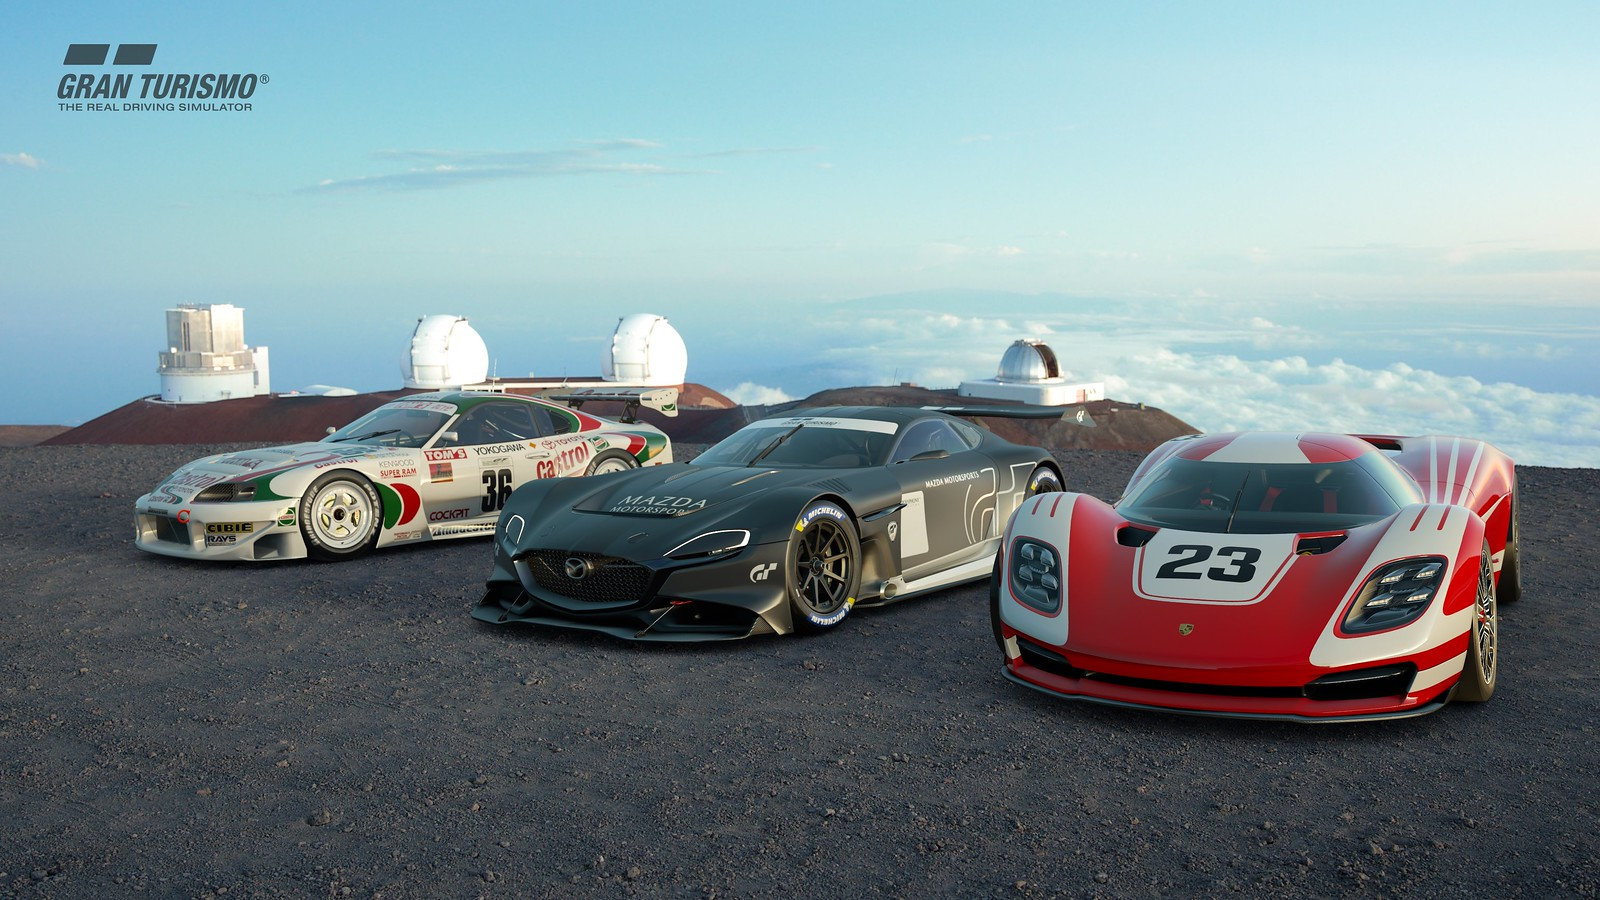 Gran Turismo 7: revelados os bônus de pré-venda e as edições do